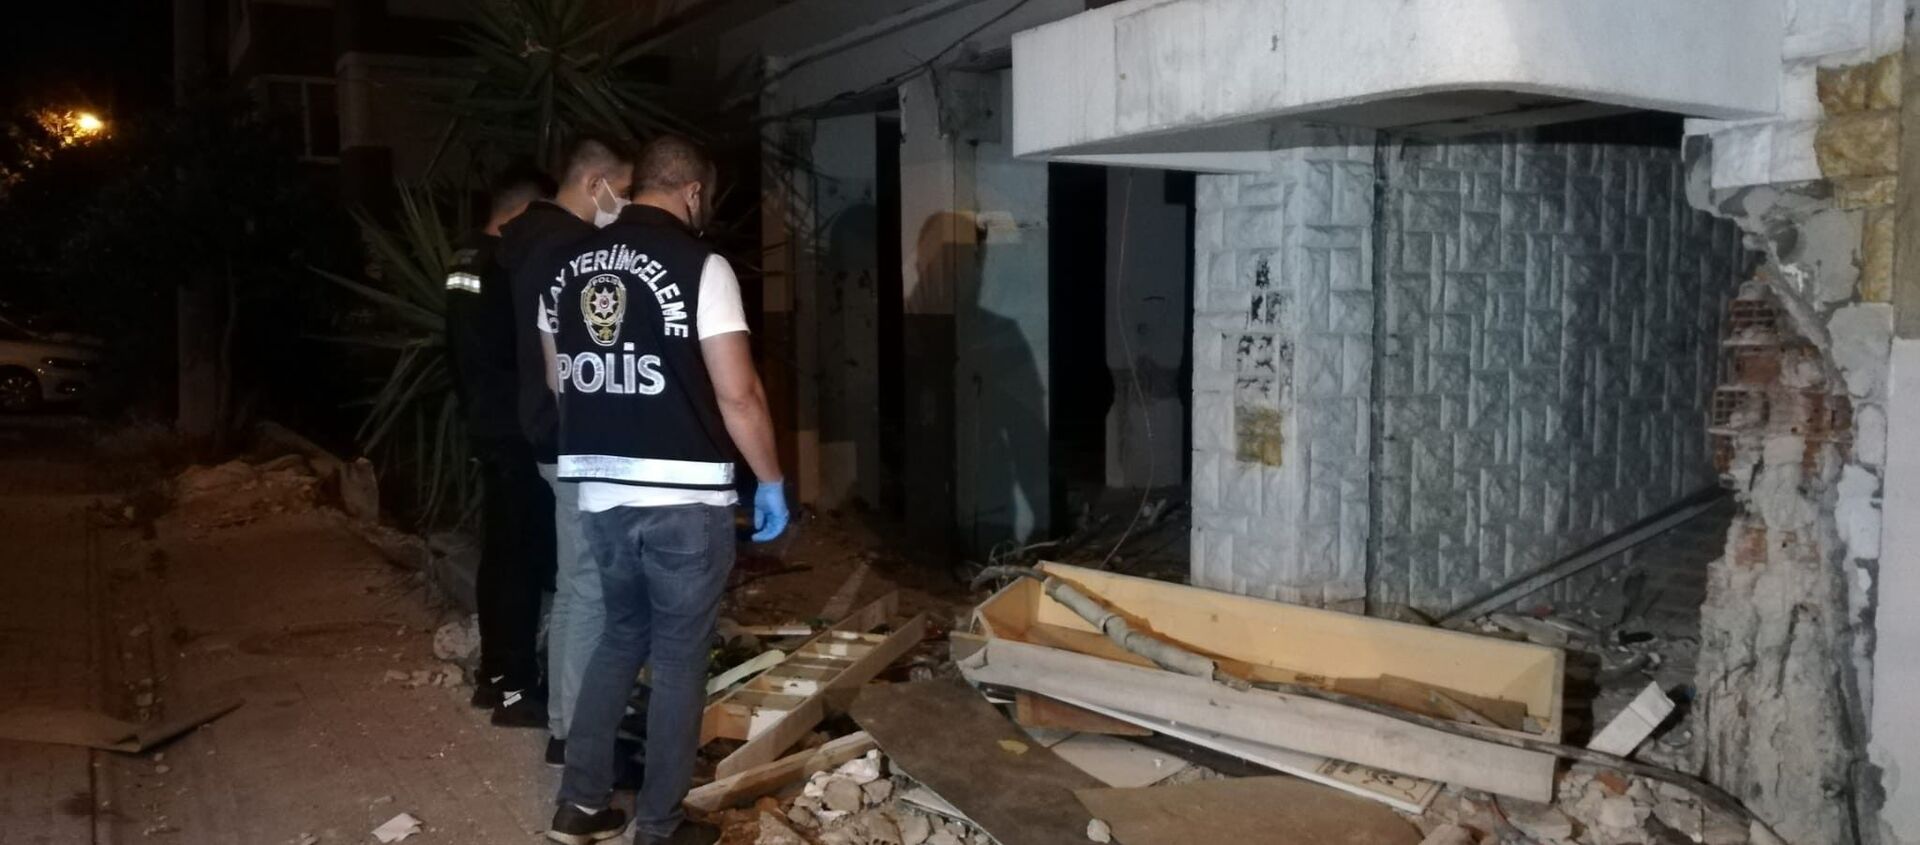 İzmir'de 30 Ekim 2020'de meydana gelen 6.6'lık depremin ardından, Karşıyaka ilçesinde bulunan ve kentsel dönüşüm kapsamında boşaltılan 8 katlı binadan kablo çalmak isterken elektrik akıma kapılan kişi kaldırıldığı hastanede yaşamını yitirdi. - Sputnik Türkiye, 1920, 22.05.2021